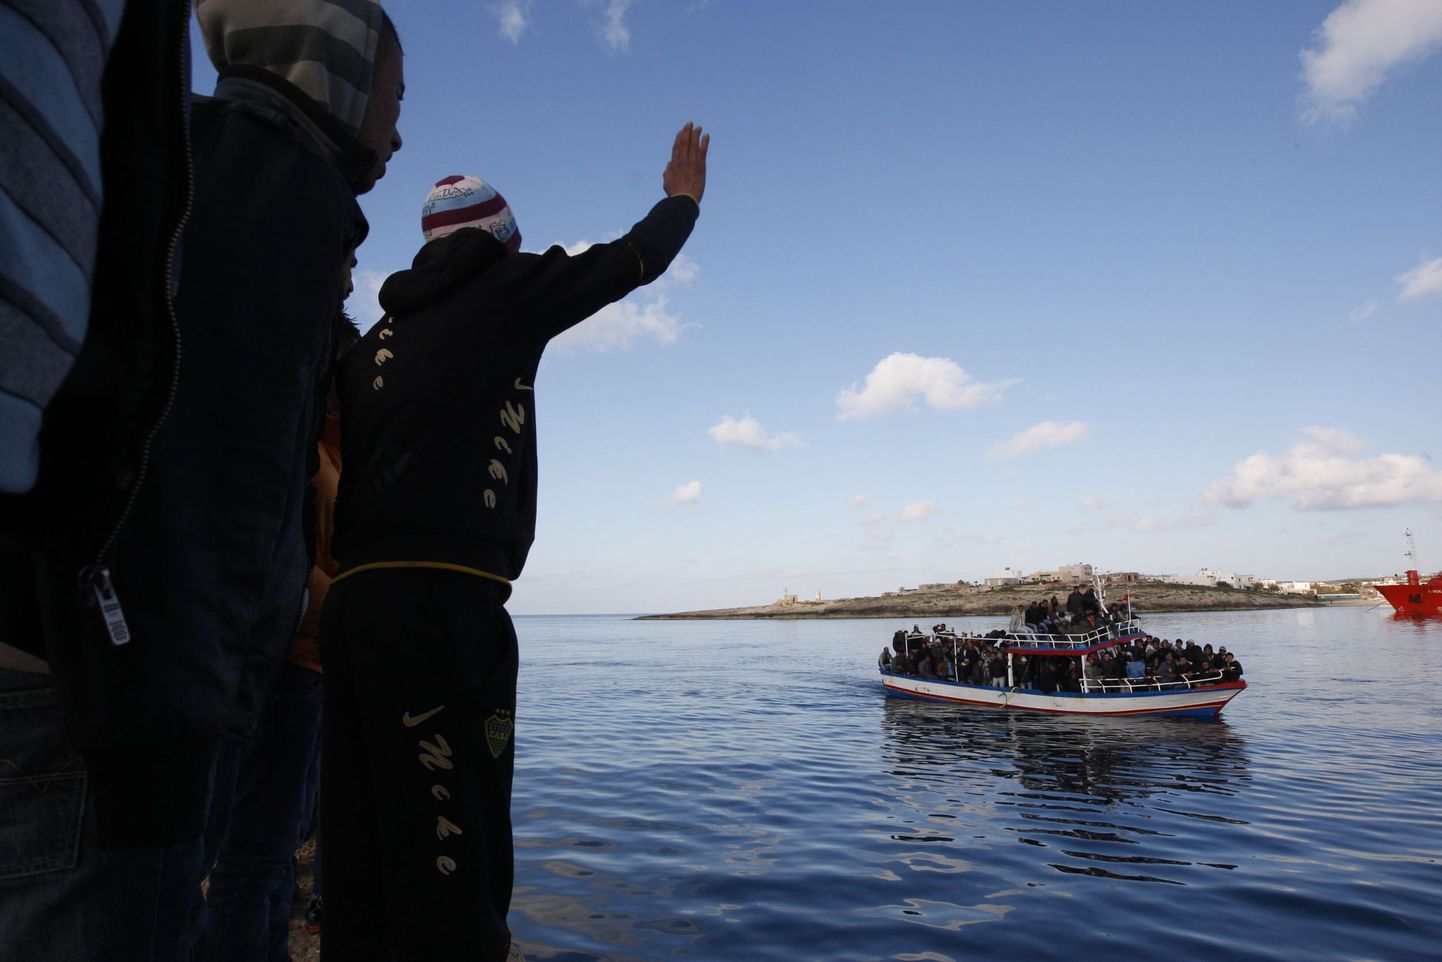 Tuneesia immigrandid tervitavad Lampedusa saarele saabuvat järjekordset põgenikelaeva.